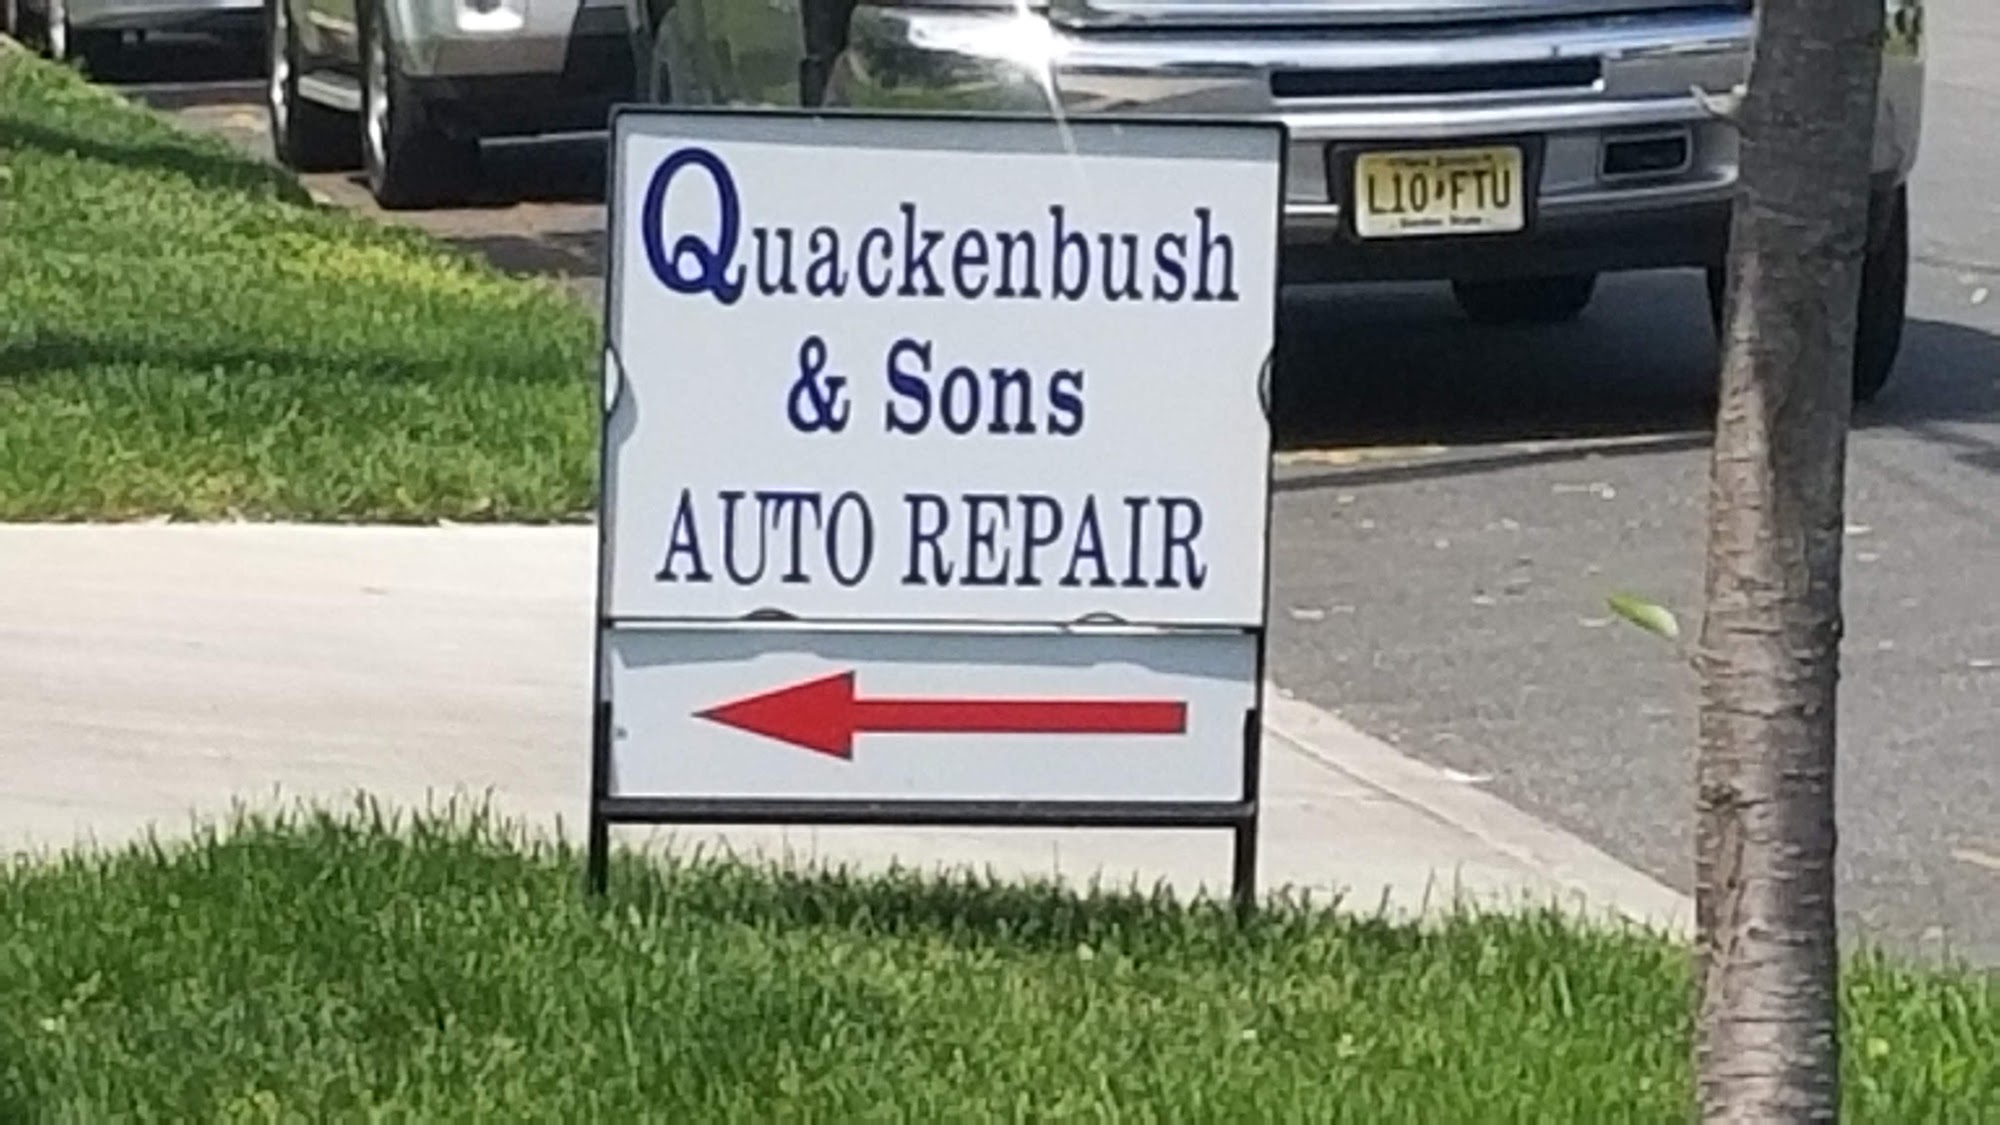 Quackenbush & Sons